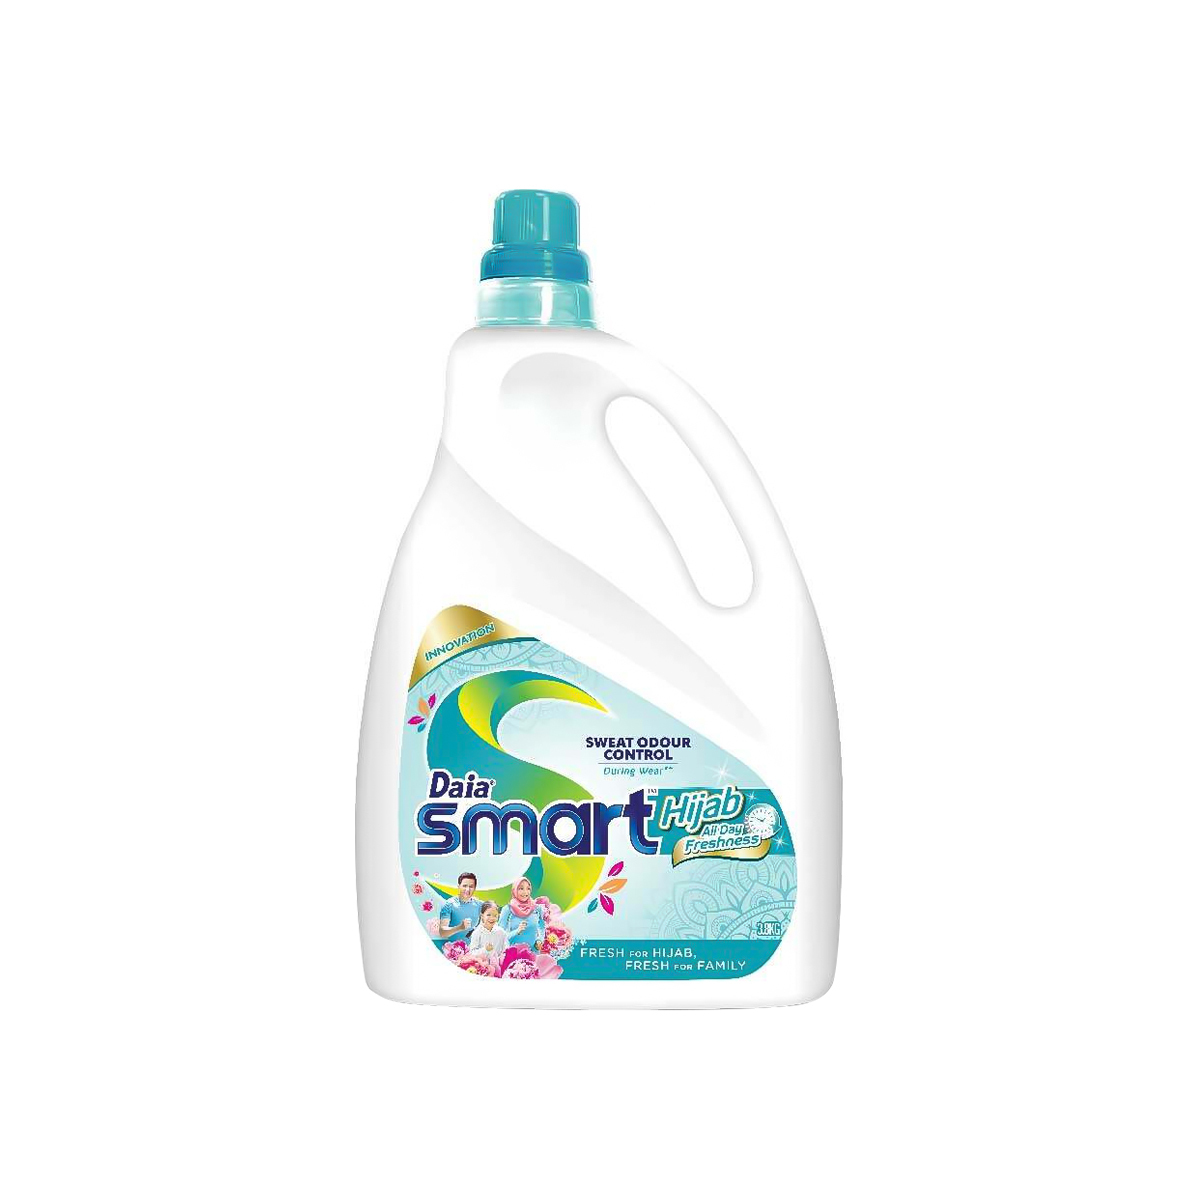 Daia Smart Liquid Detergent Hijab 3.6kg